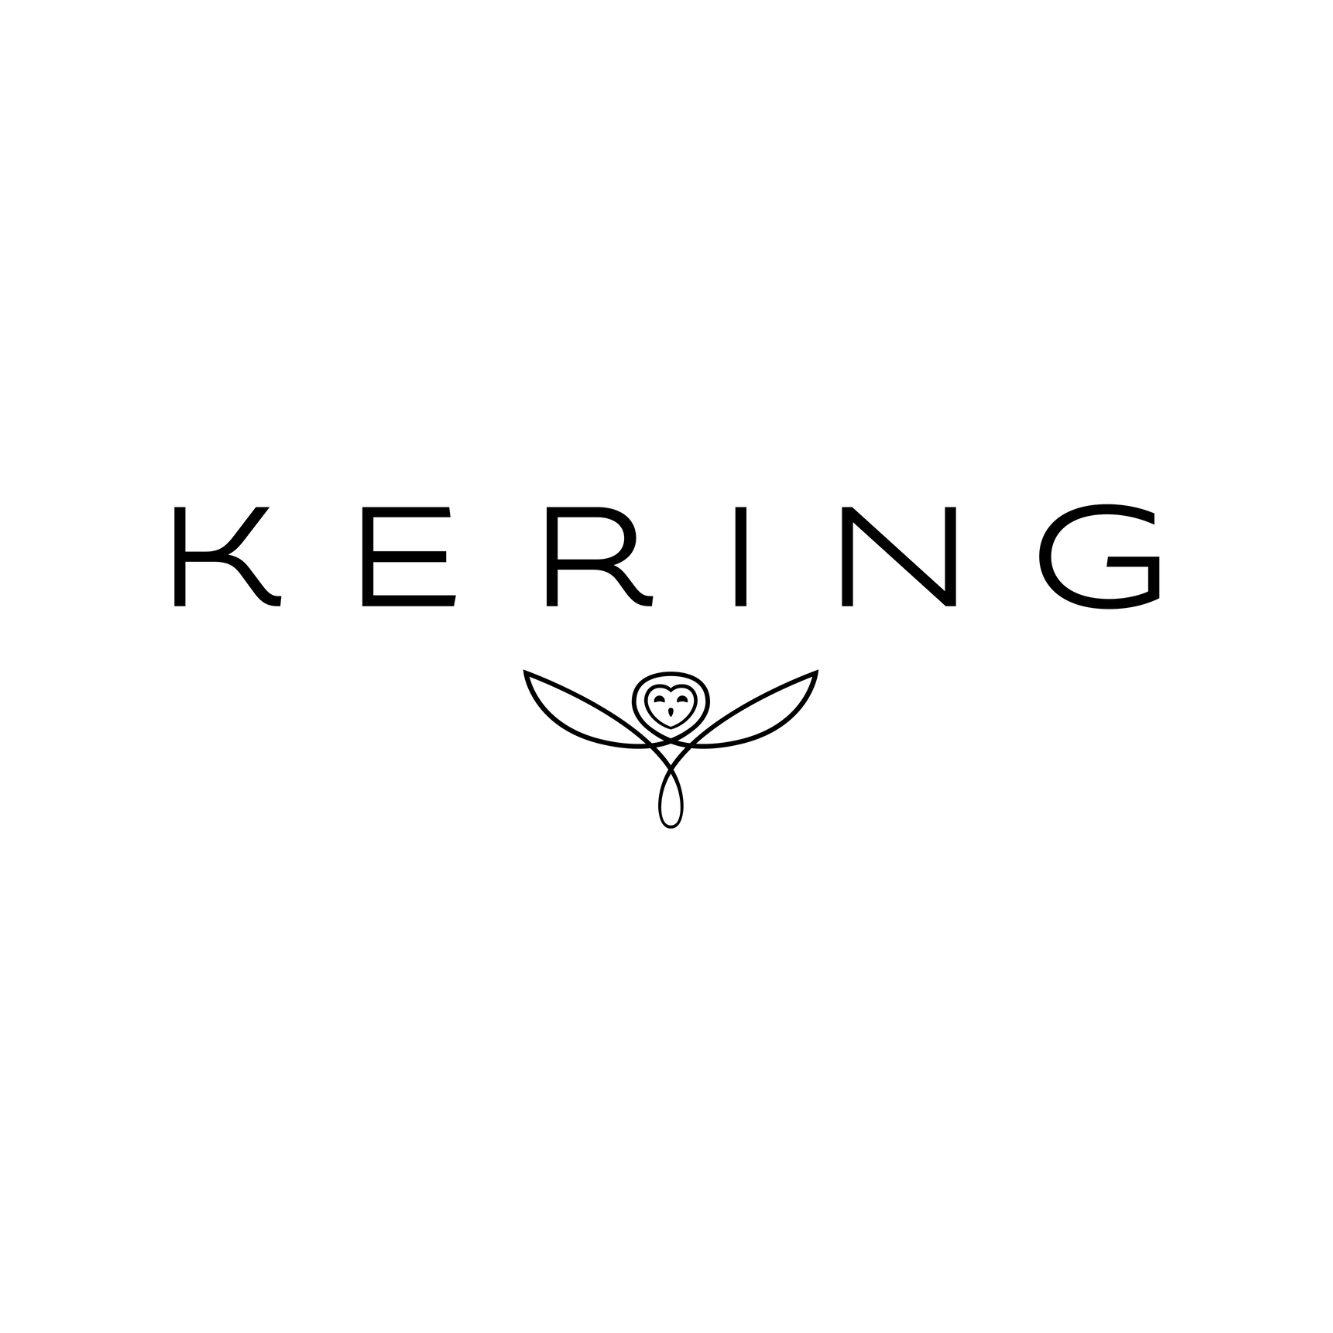 logo kering - projet de compensation volontaire 